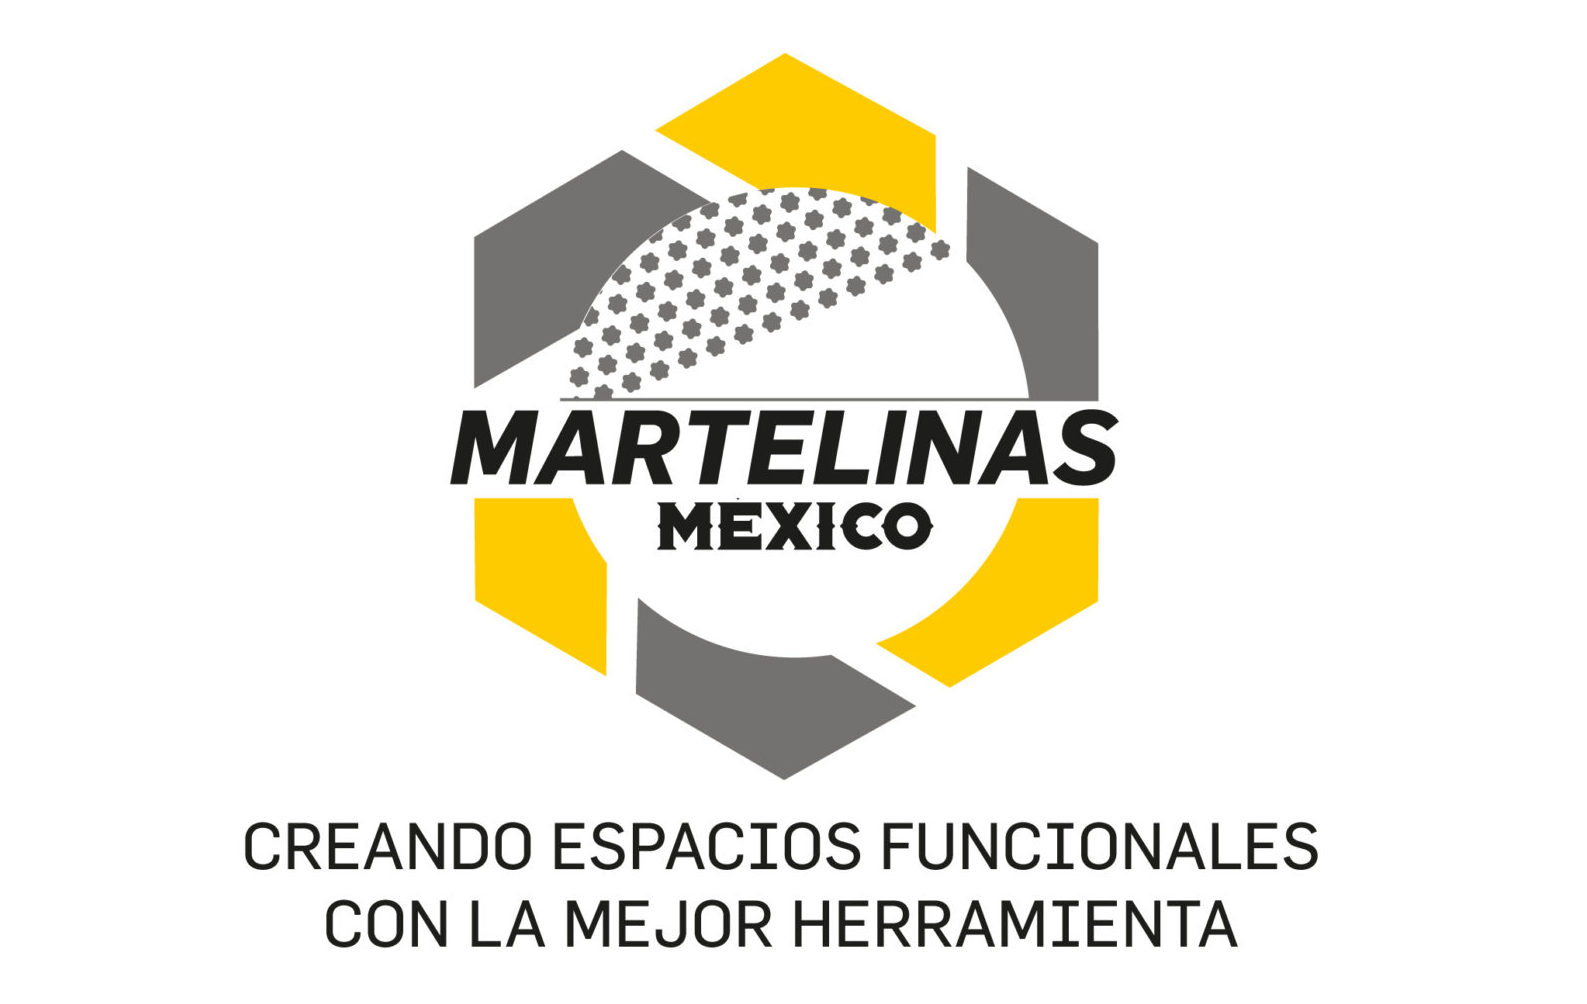 Martelinas México